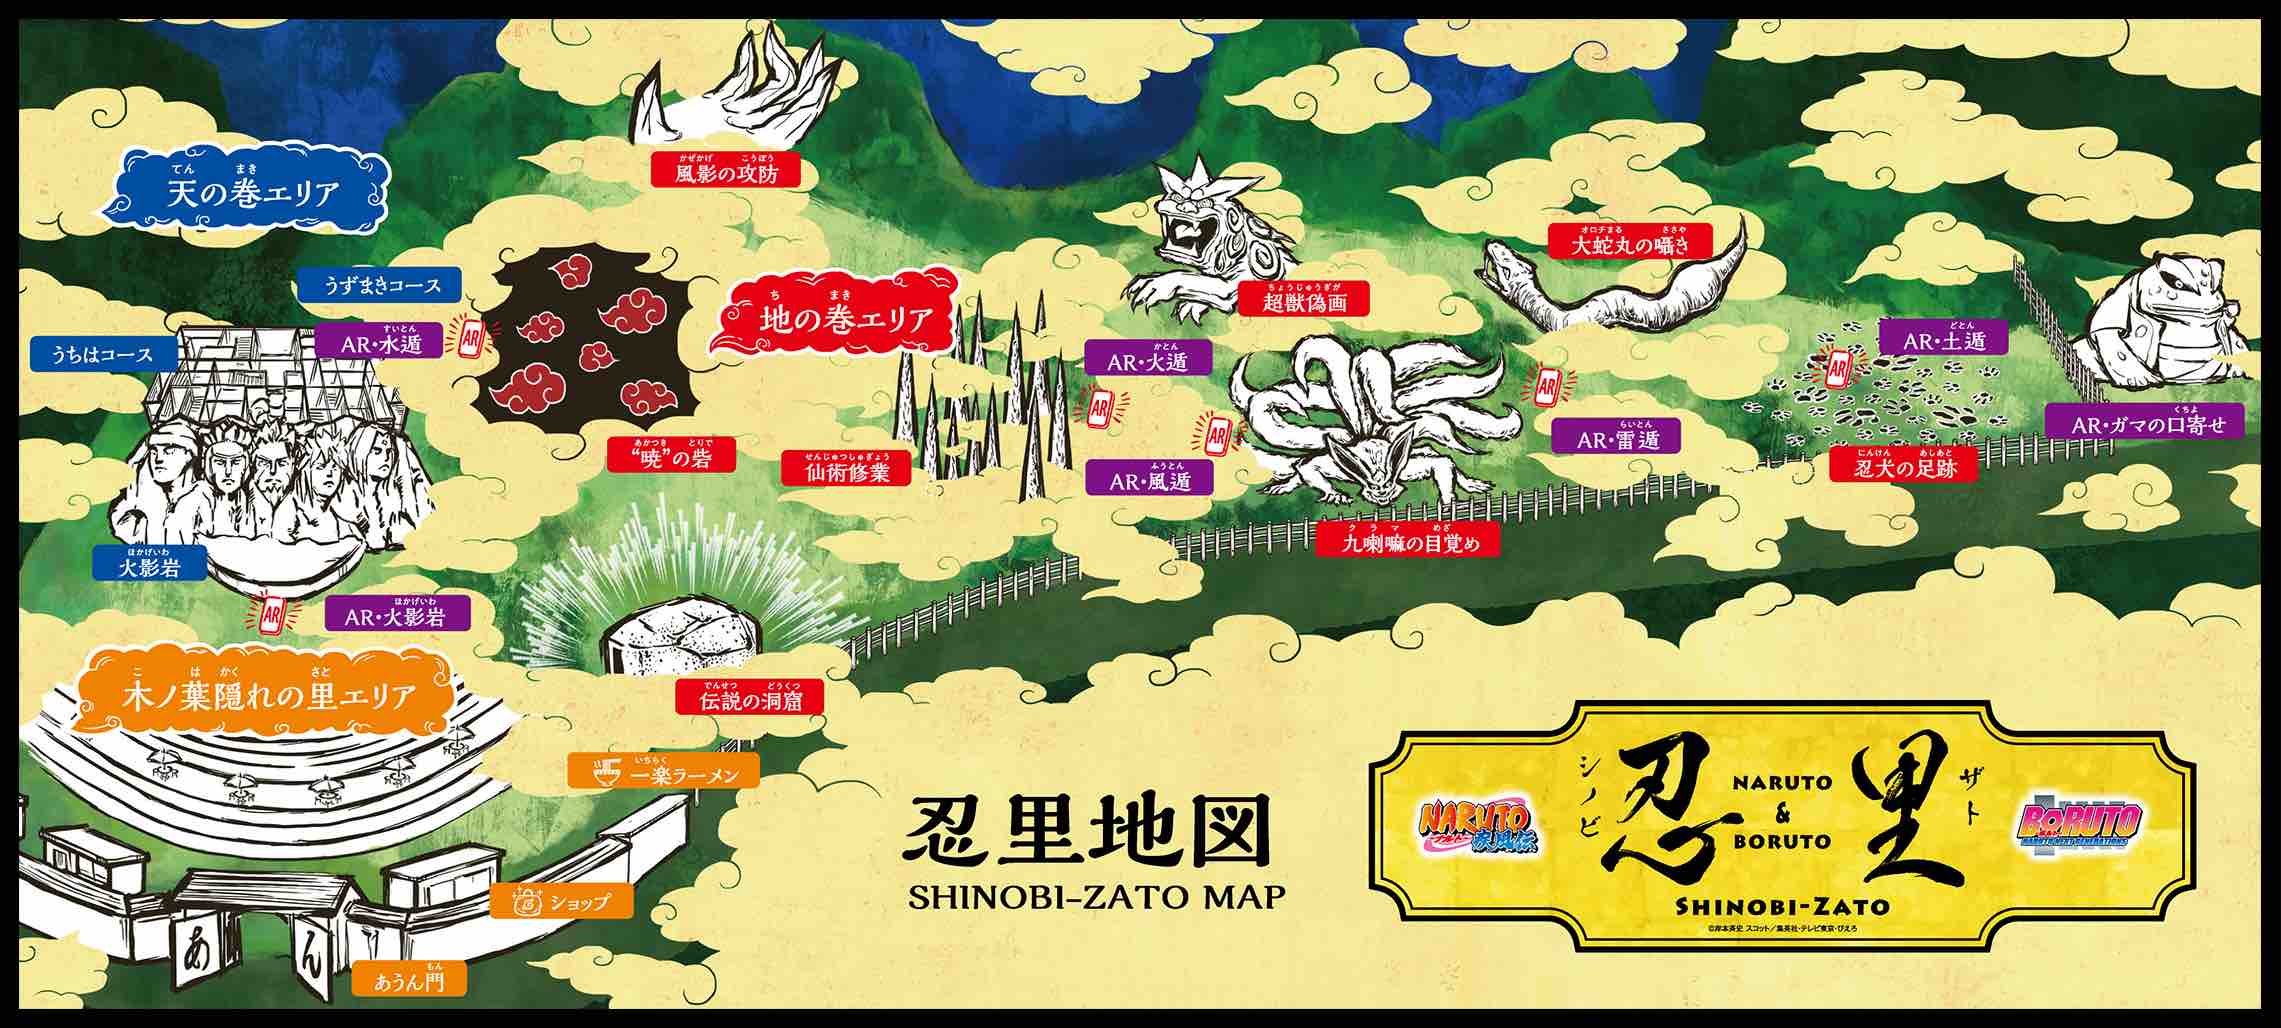 Le parc d'attraction Naruto ouvre ses portes au Japon #4